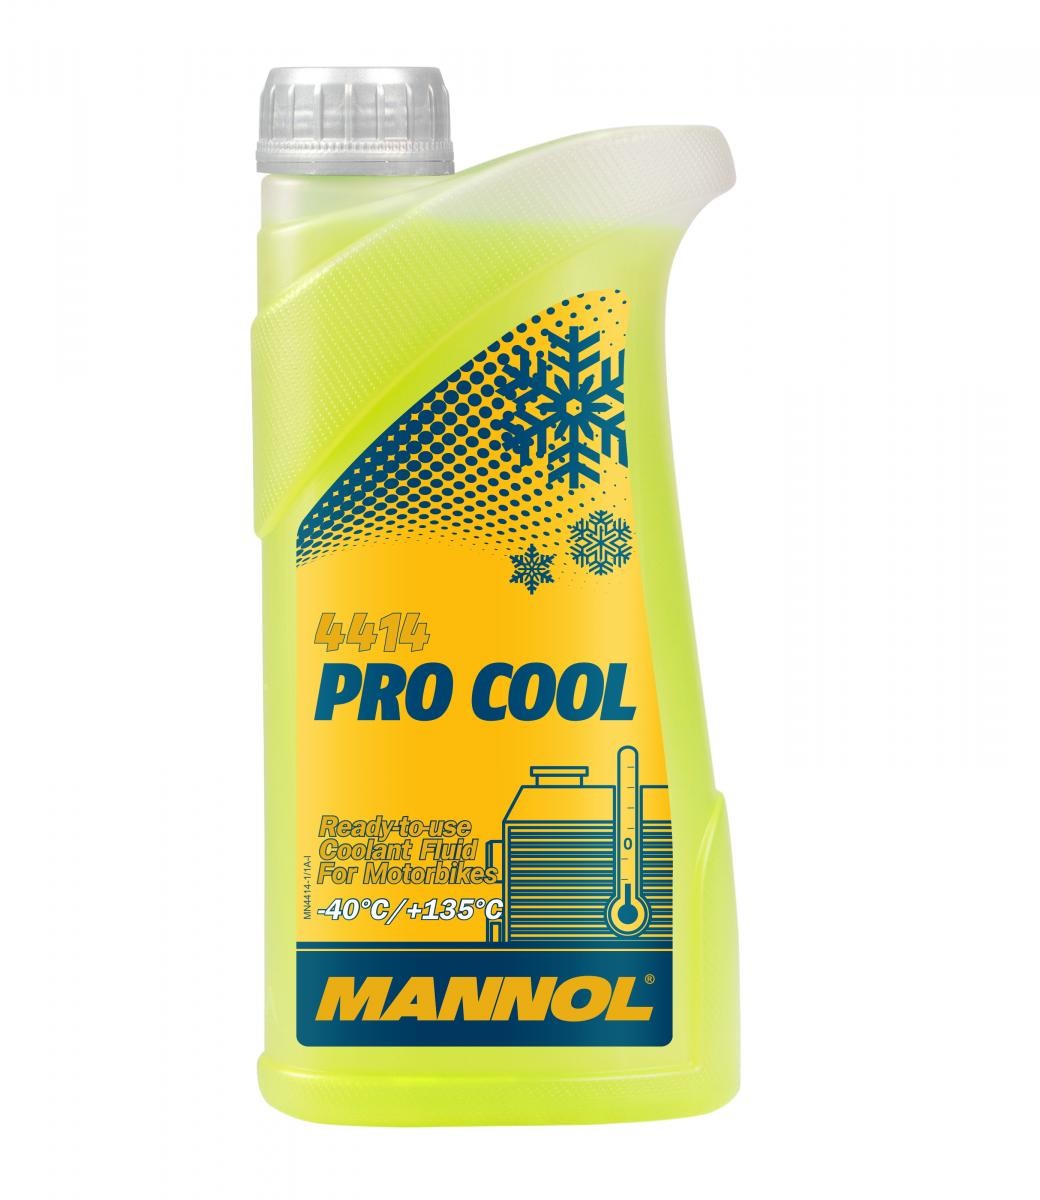 MN4414-1 MANNOL Pro Cool G13 żółty, 1l G13 Ochrona przed zamarzaniem MN4414-1 kupić niedrogo